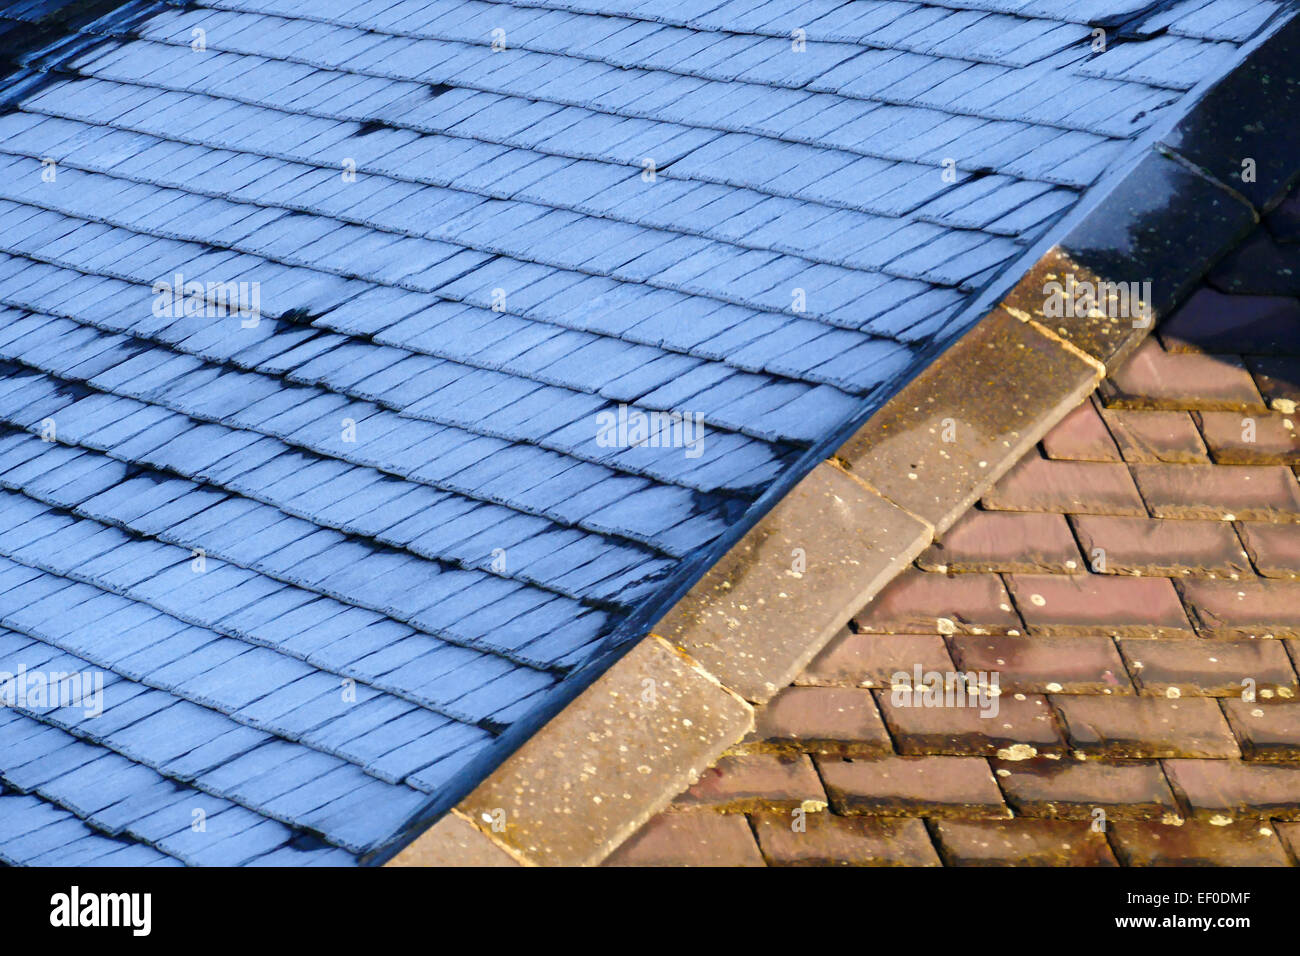 Am frühen Morgen, Dach mit Schiefer, einseitig abgedeckt bei Frost, geschmolzen andererseits der Frost von der Sonne. Stockfoto